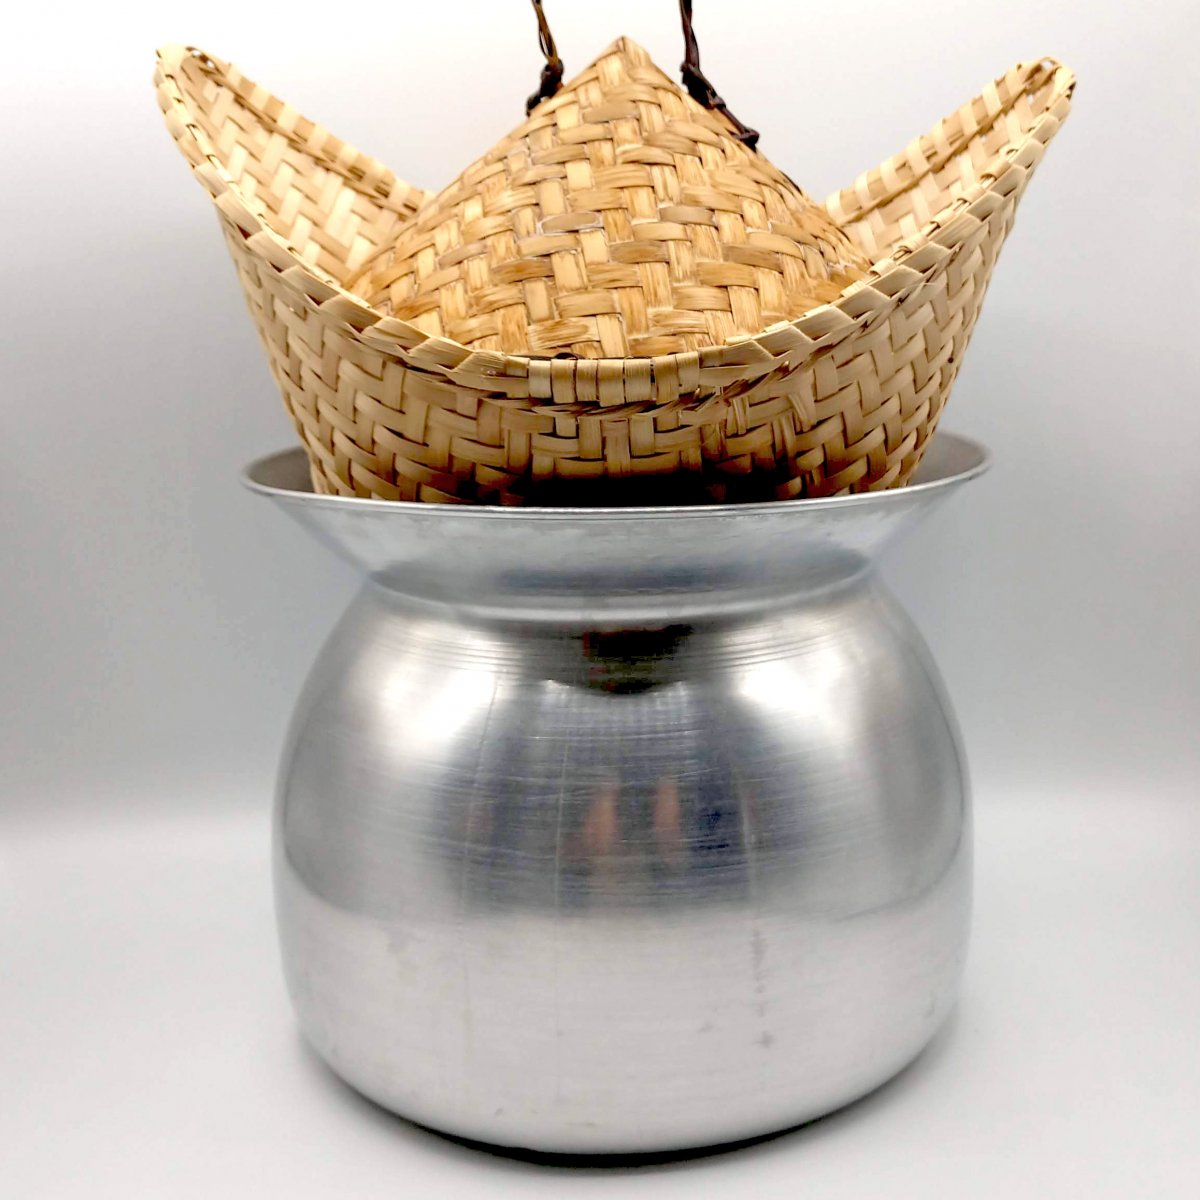 sticky-rice-steamer-pot-and-basket